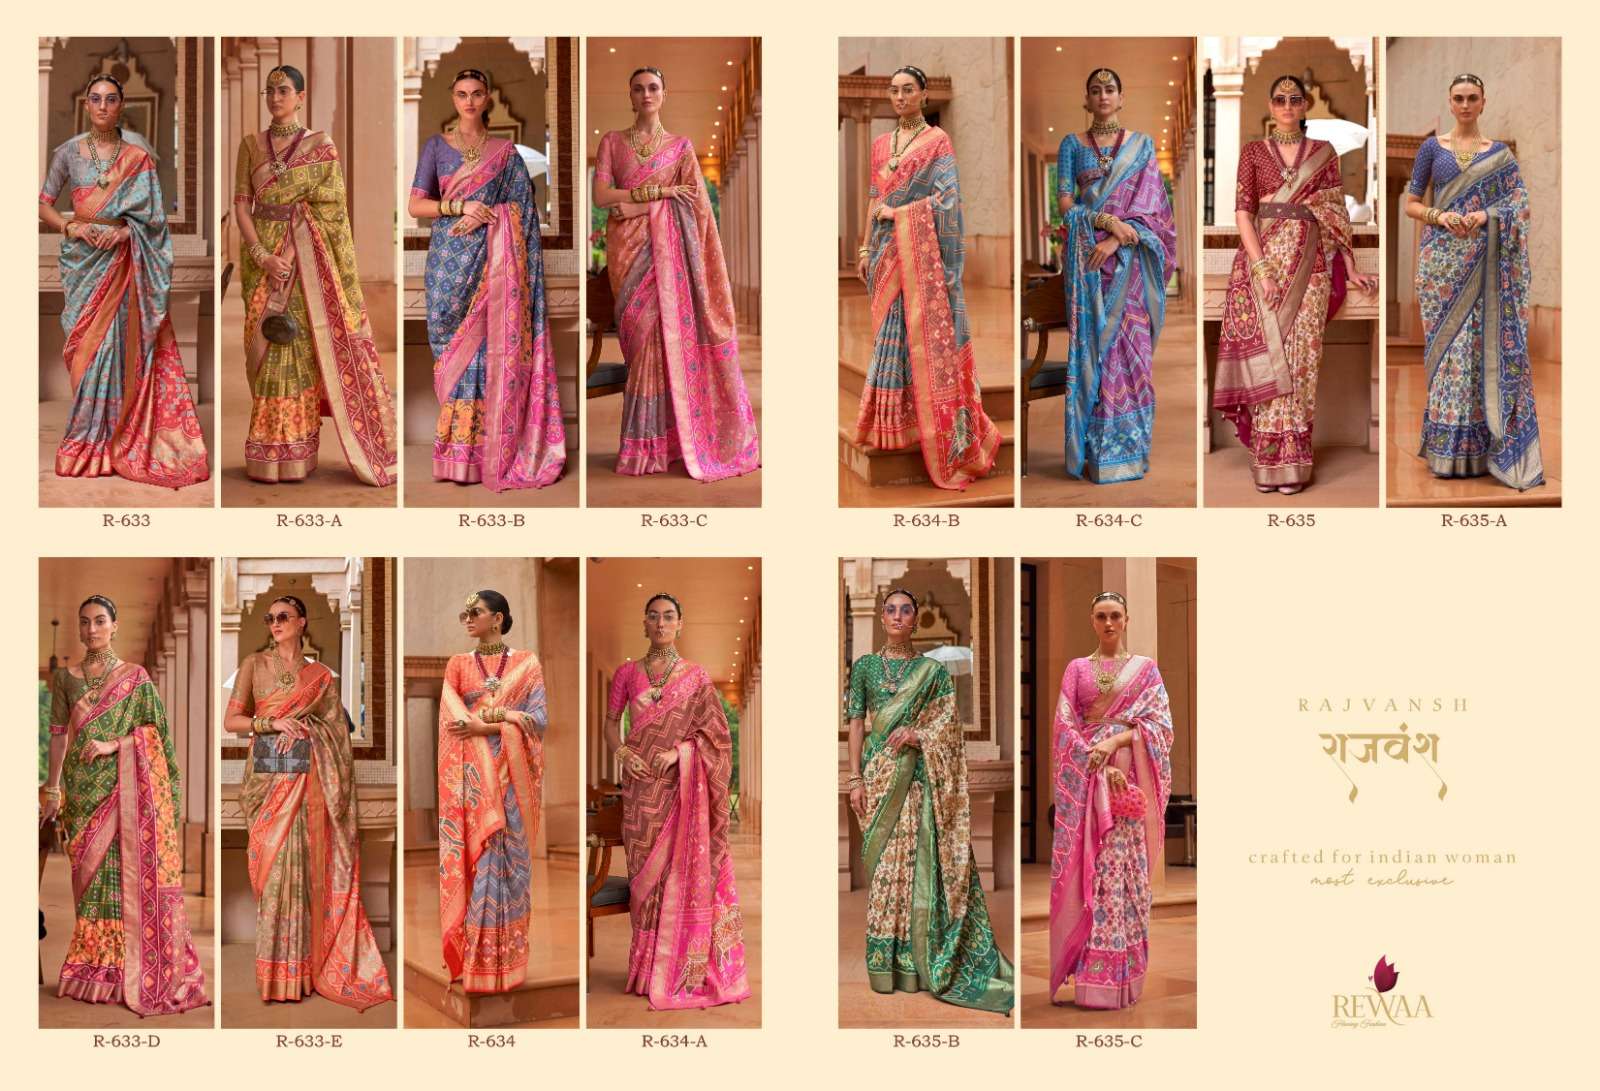 rewaa rajvansh stylish designer party wear saree collection design 2023 